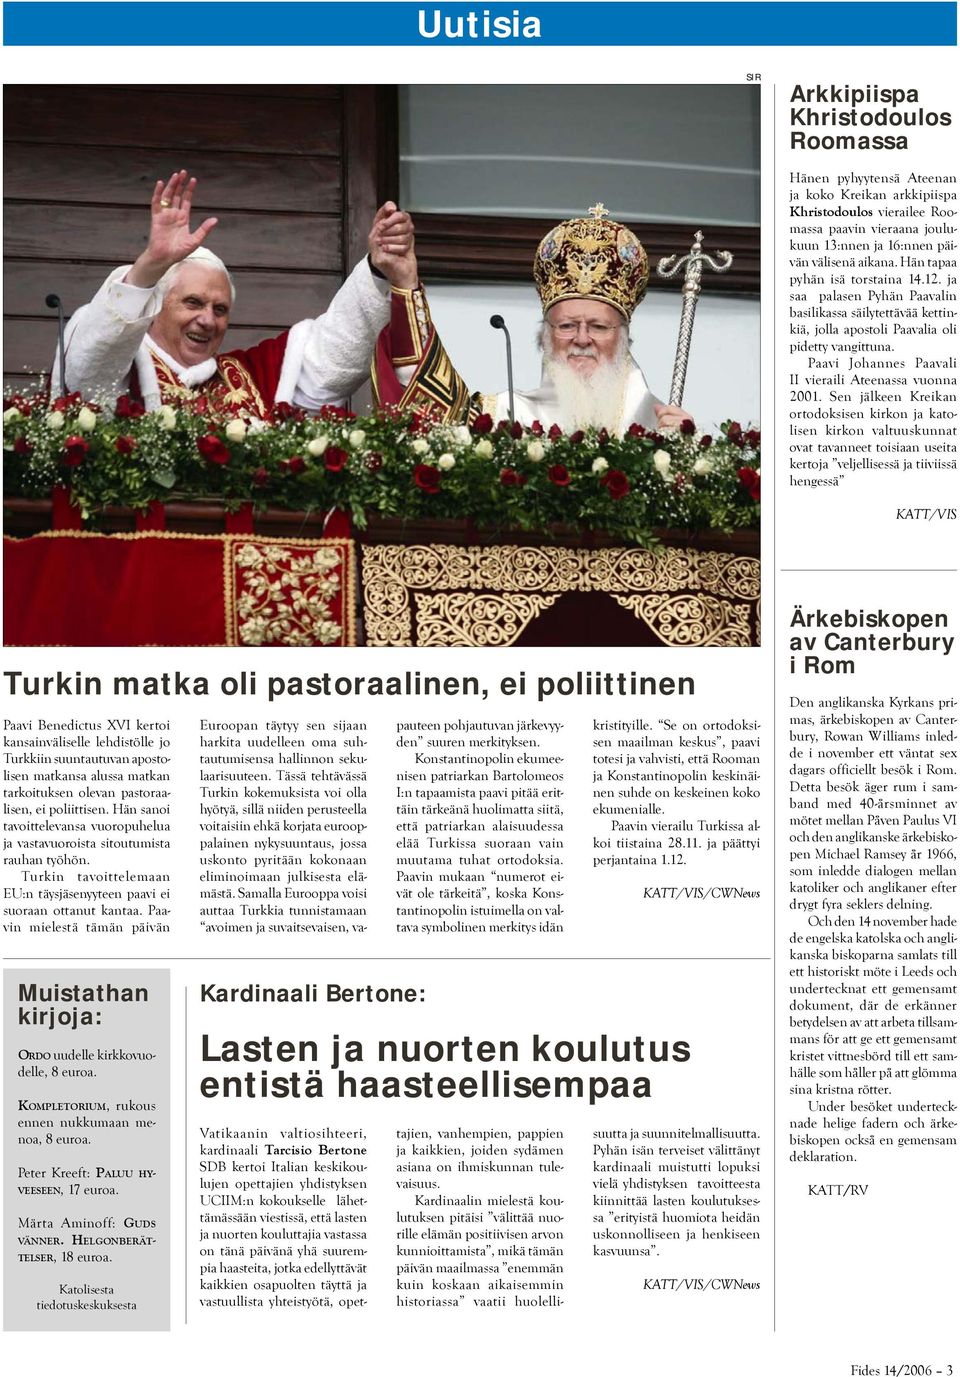 Paavi Johannes Paavali II vieraili Ateenassa vuonna 2001.